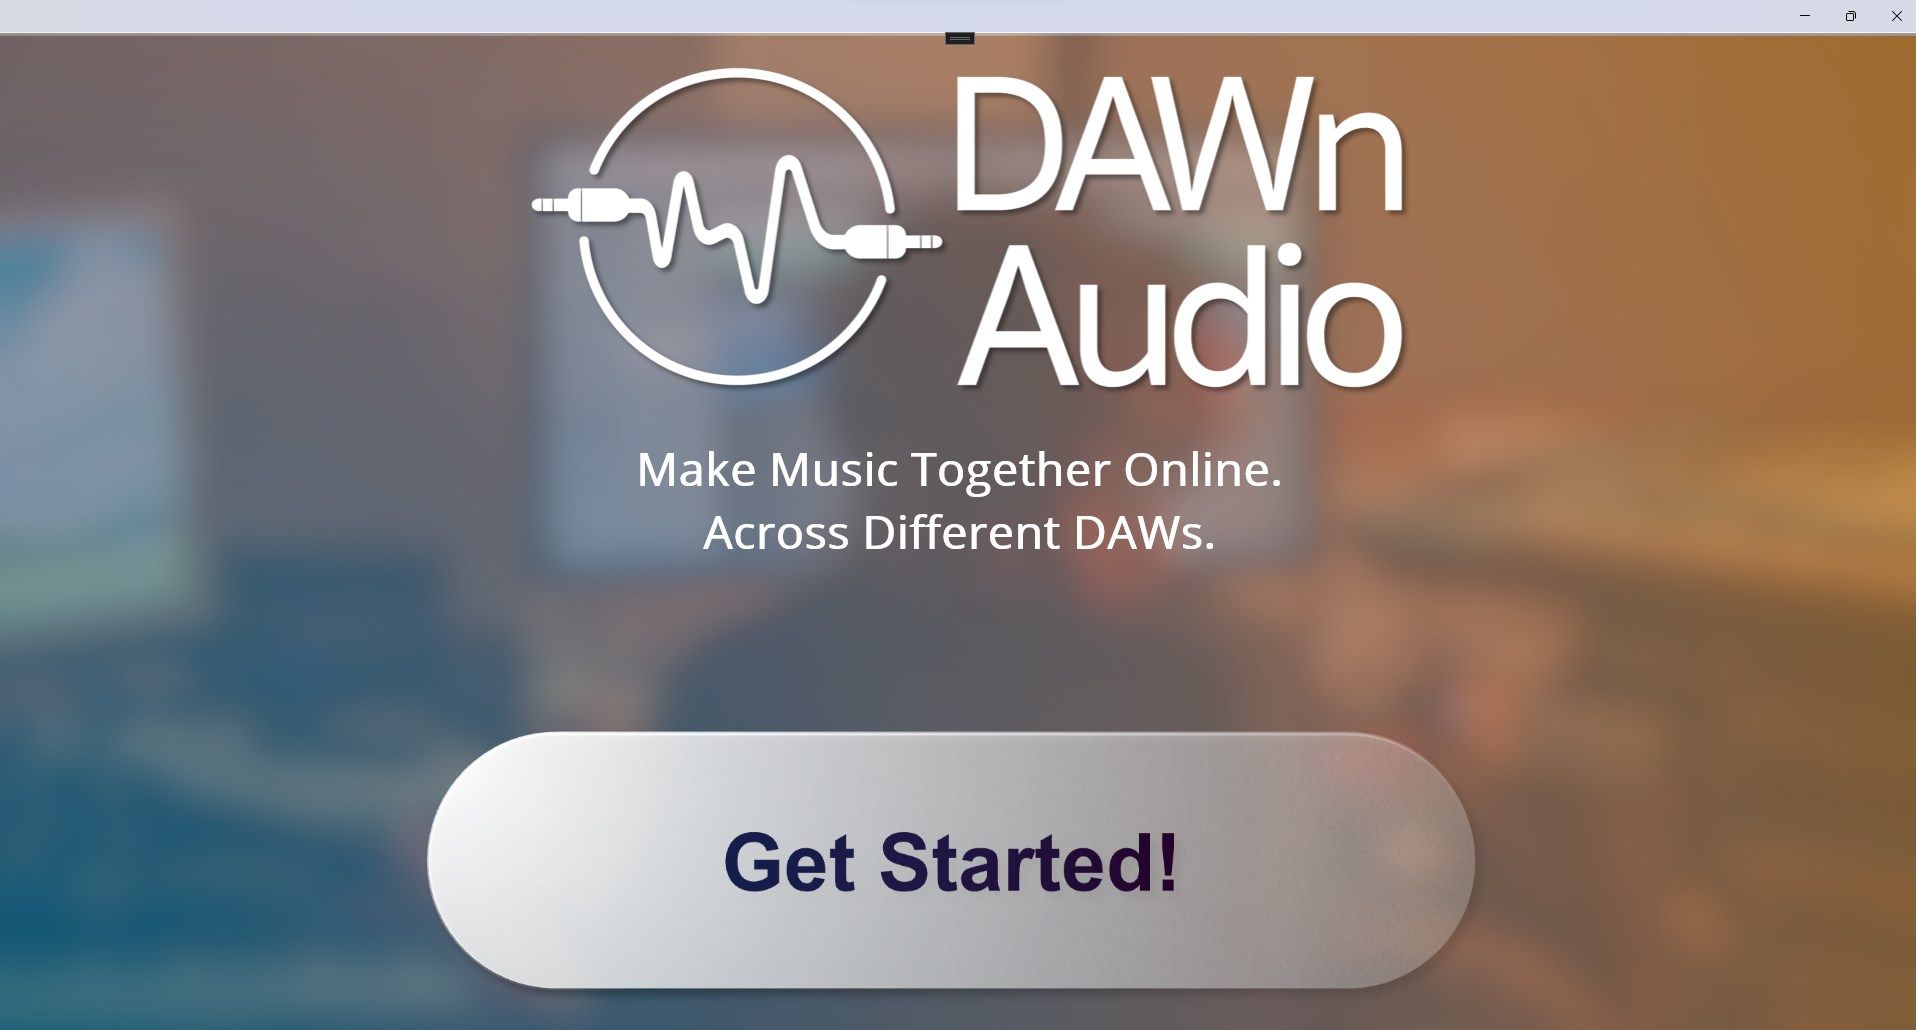 DAWn Audio